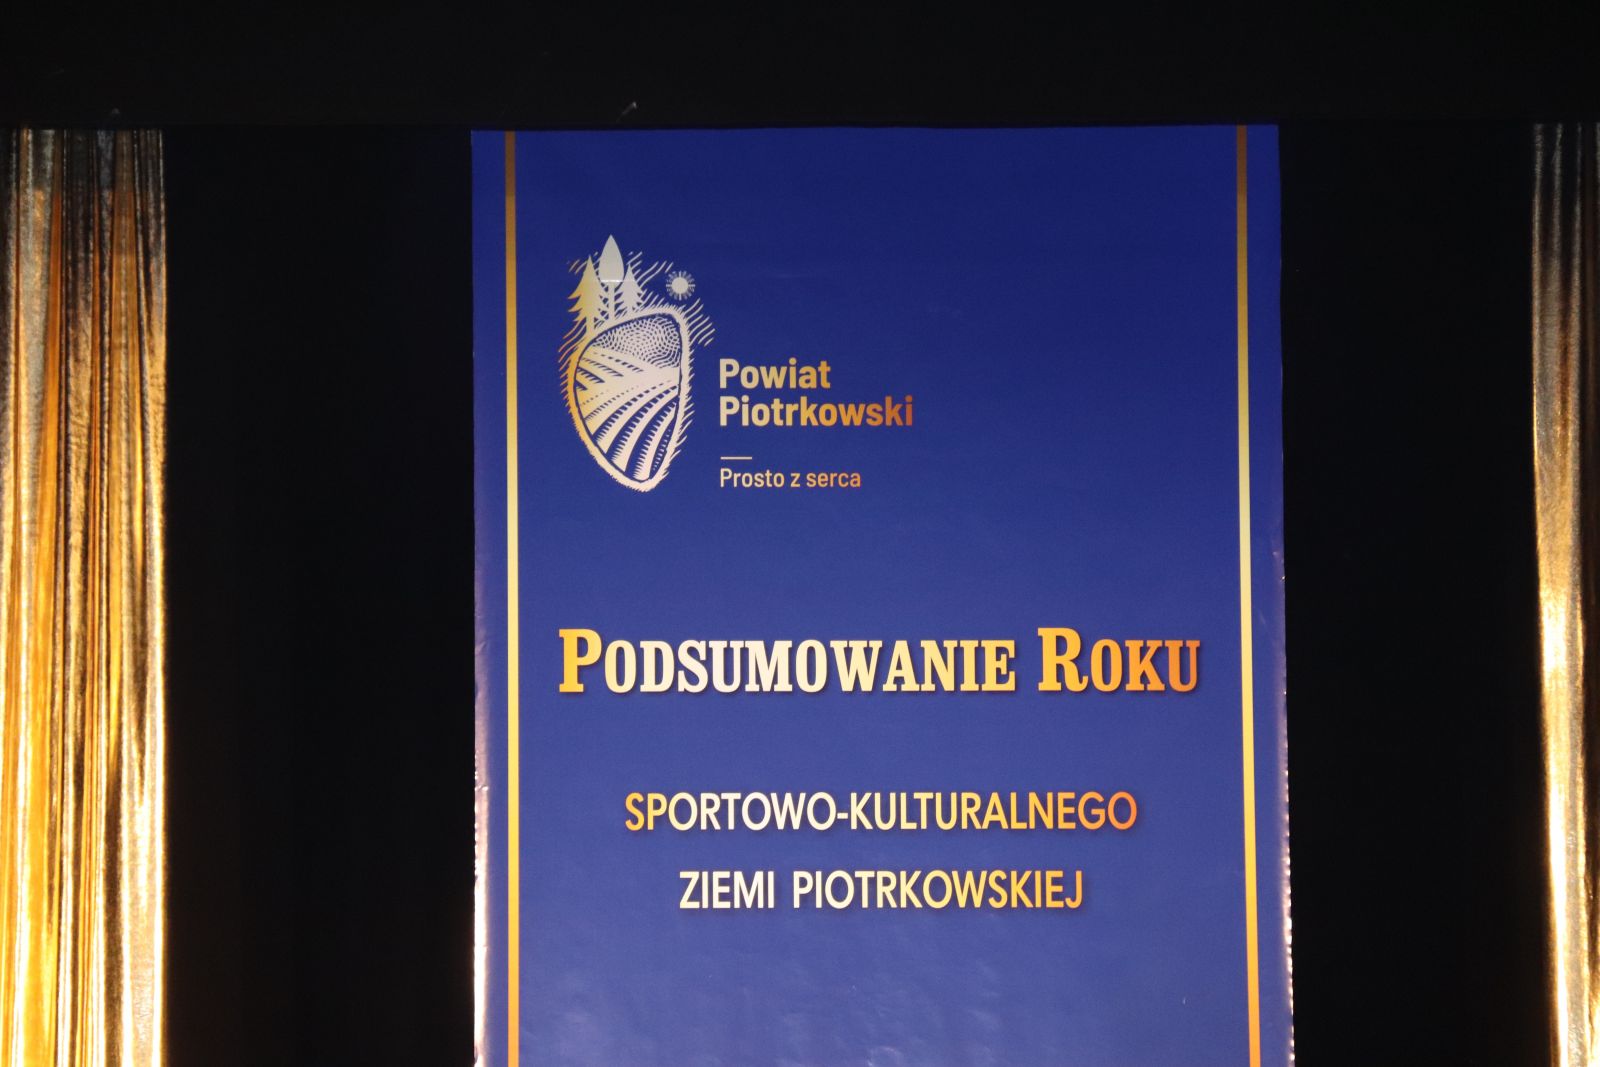 Podsumowanie Roku Sportowo - Kulturalnego Ziemi Piotrkowskiej